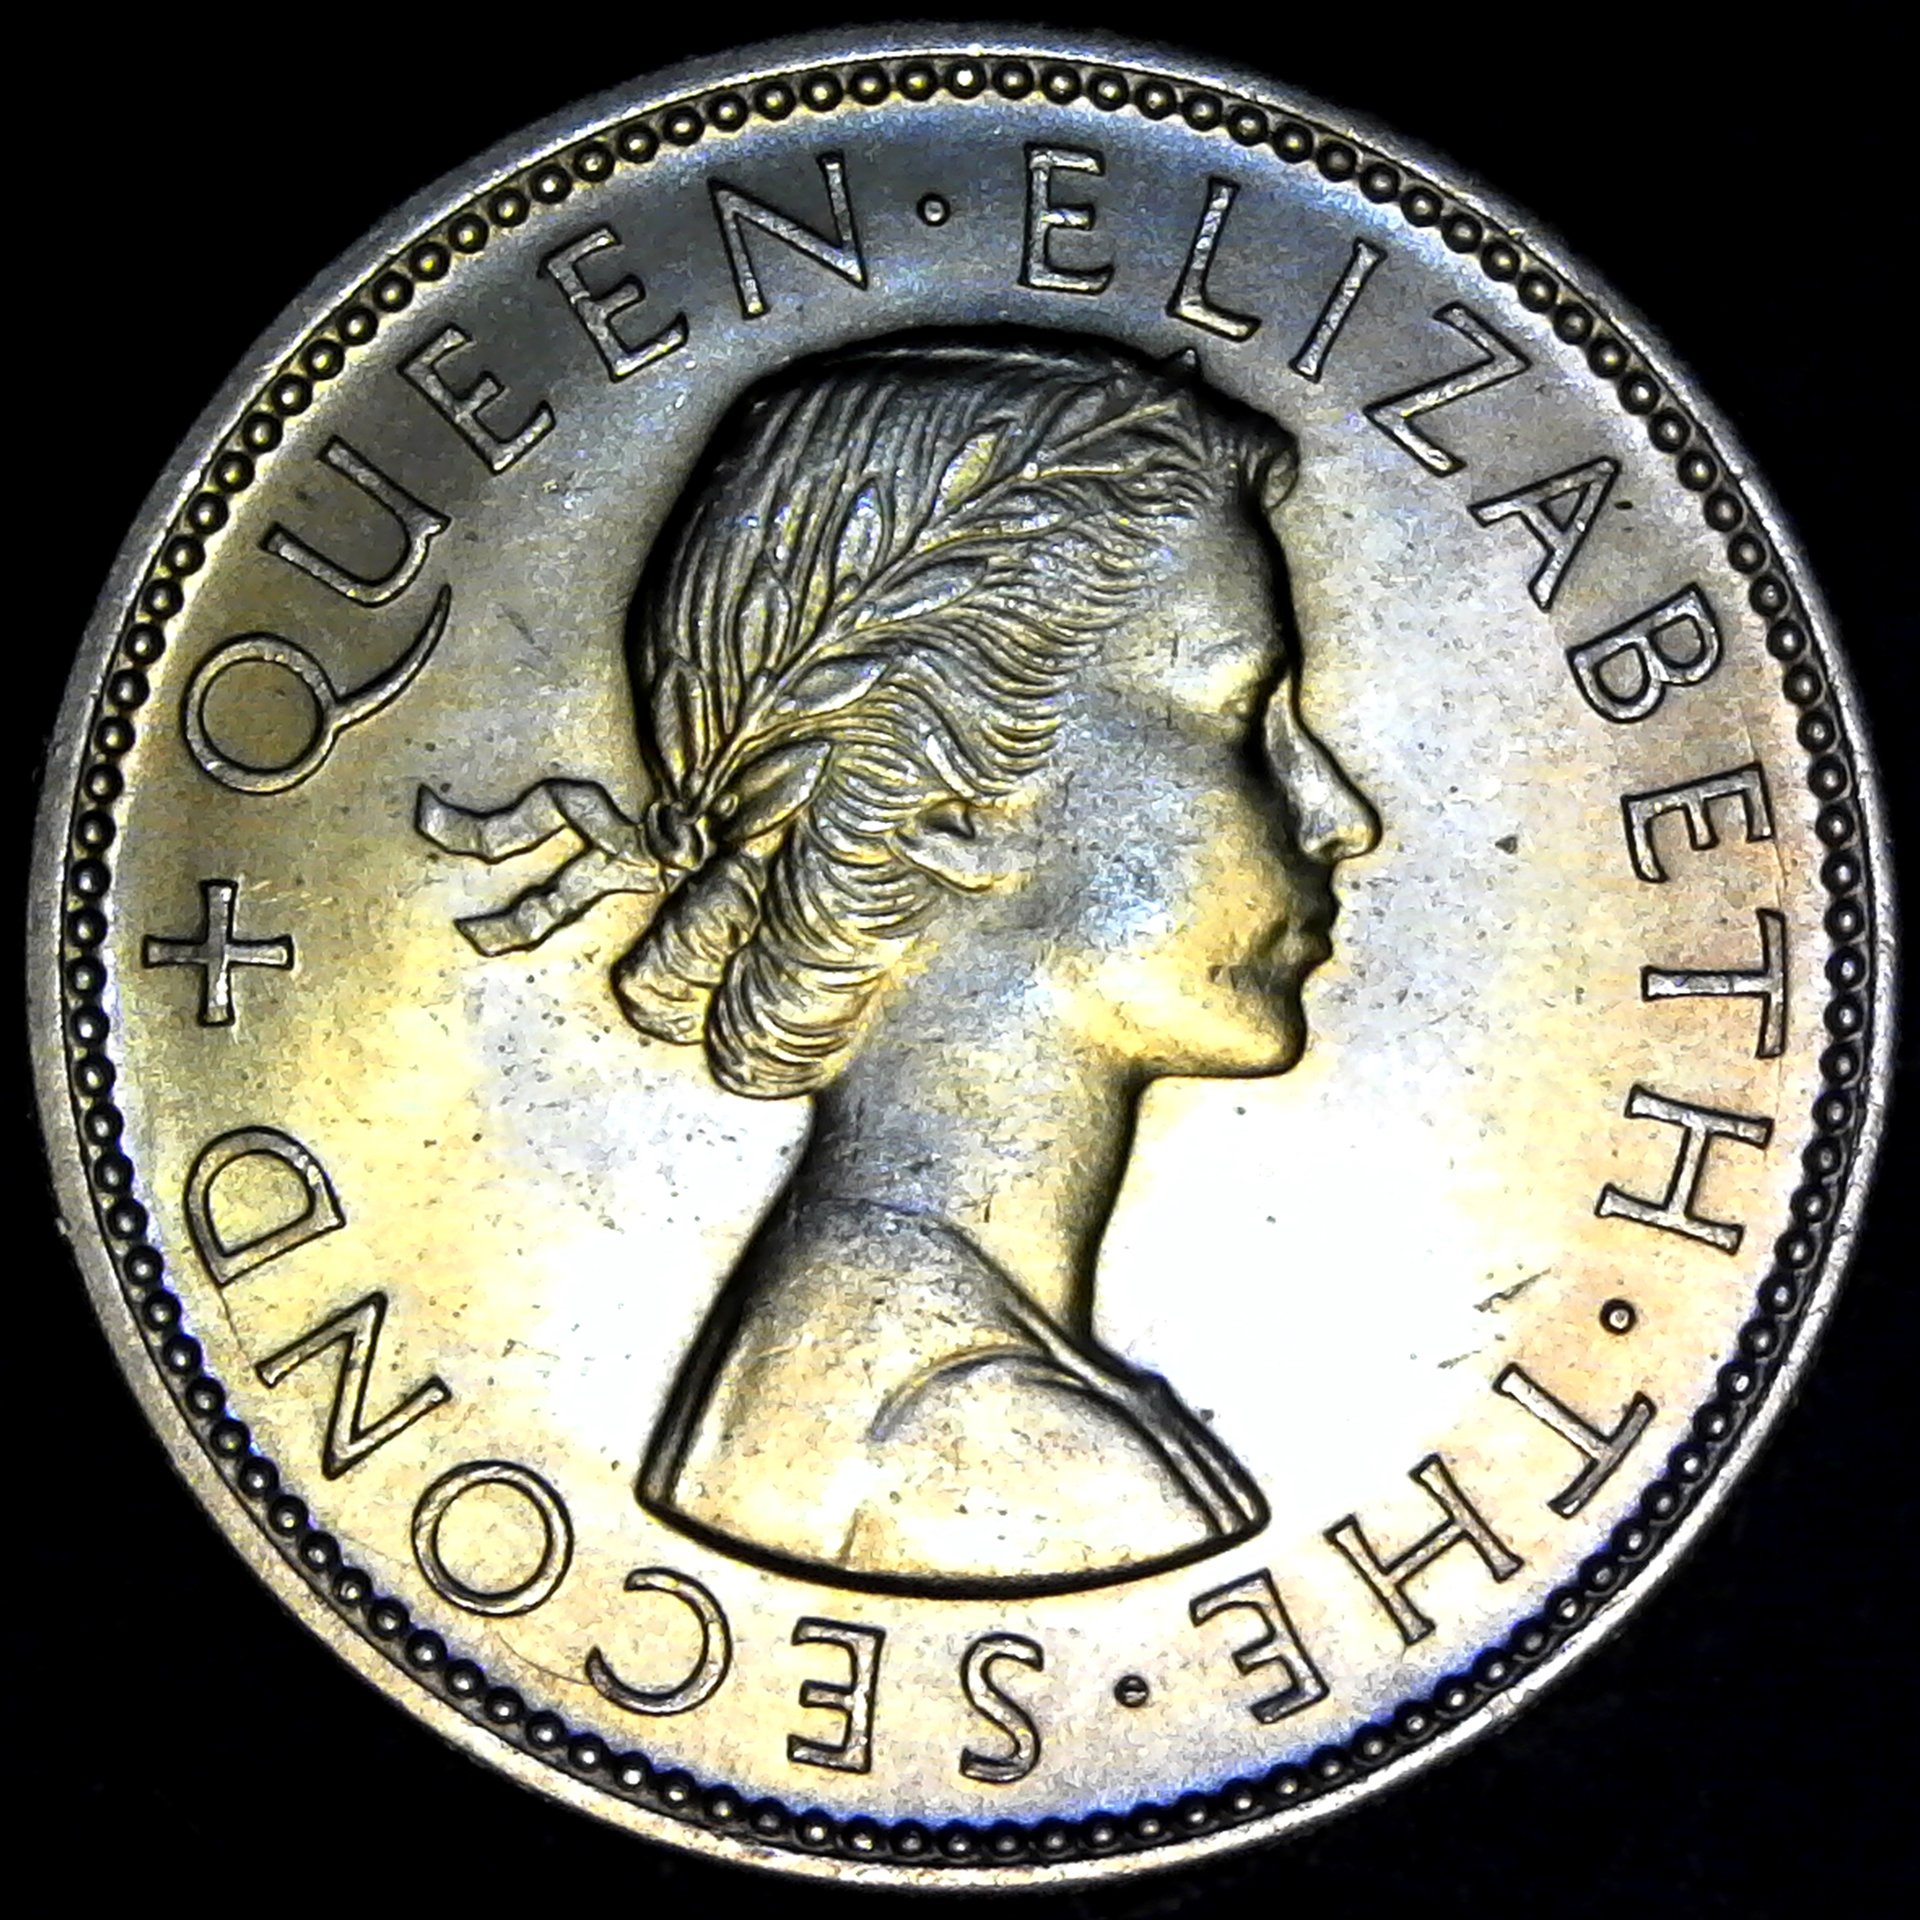 Rhodesia and Nyasaland Two Shillings 1957 obv.jpg